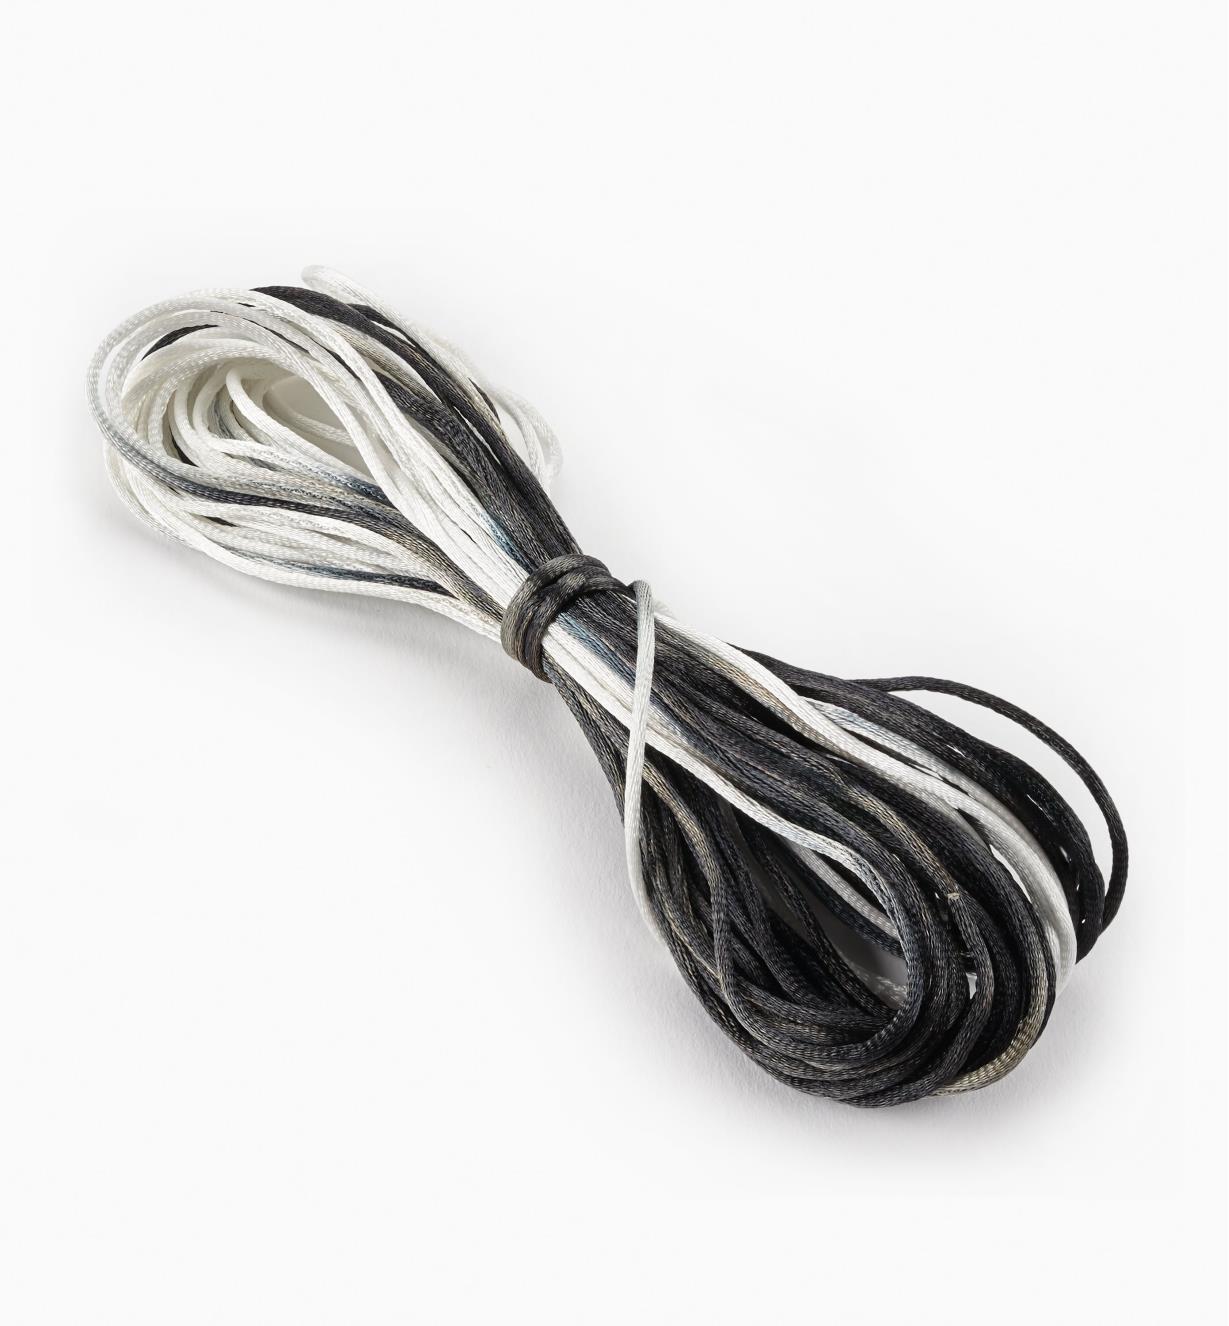 09A0742 - Multicolor, Black & White Rattail Cord